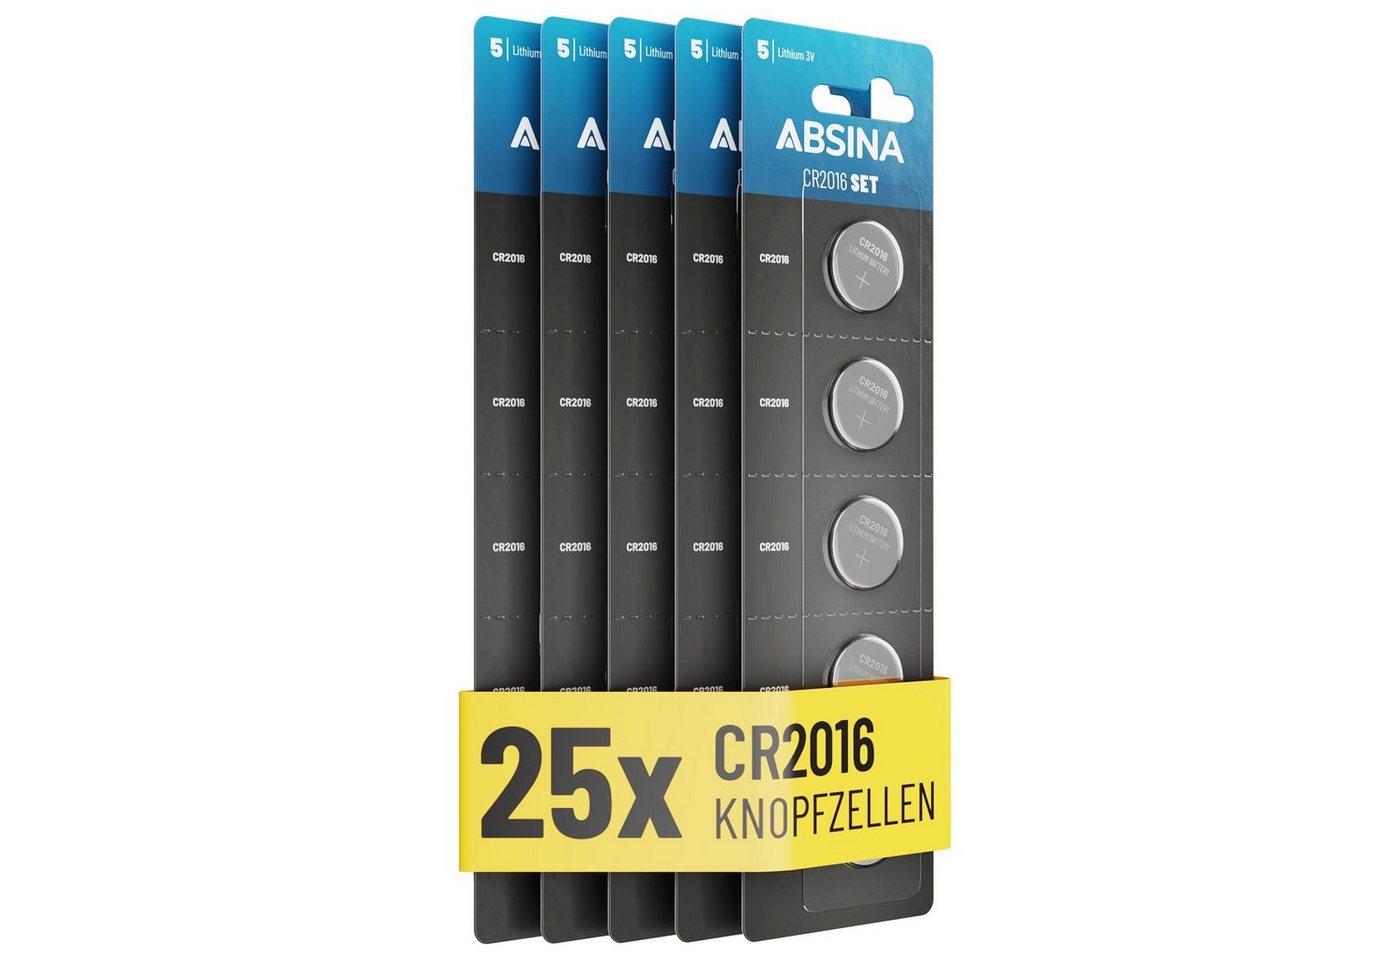 ABSINA CR2016 Knopfzelle 25er Pack - CR 2016 Knopfzelle 3V, Batterie CR2016 Knopfzelle, (1 St) von ABSINA